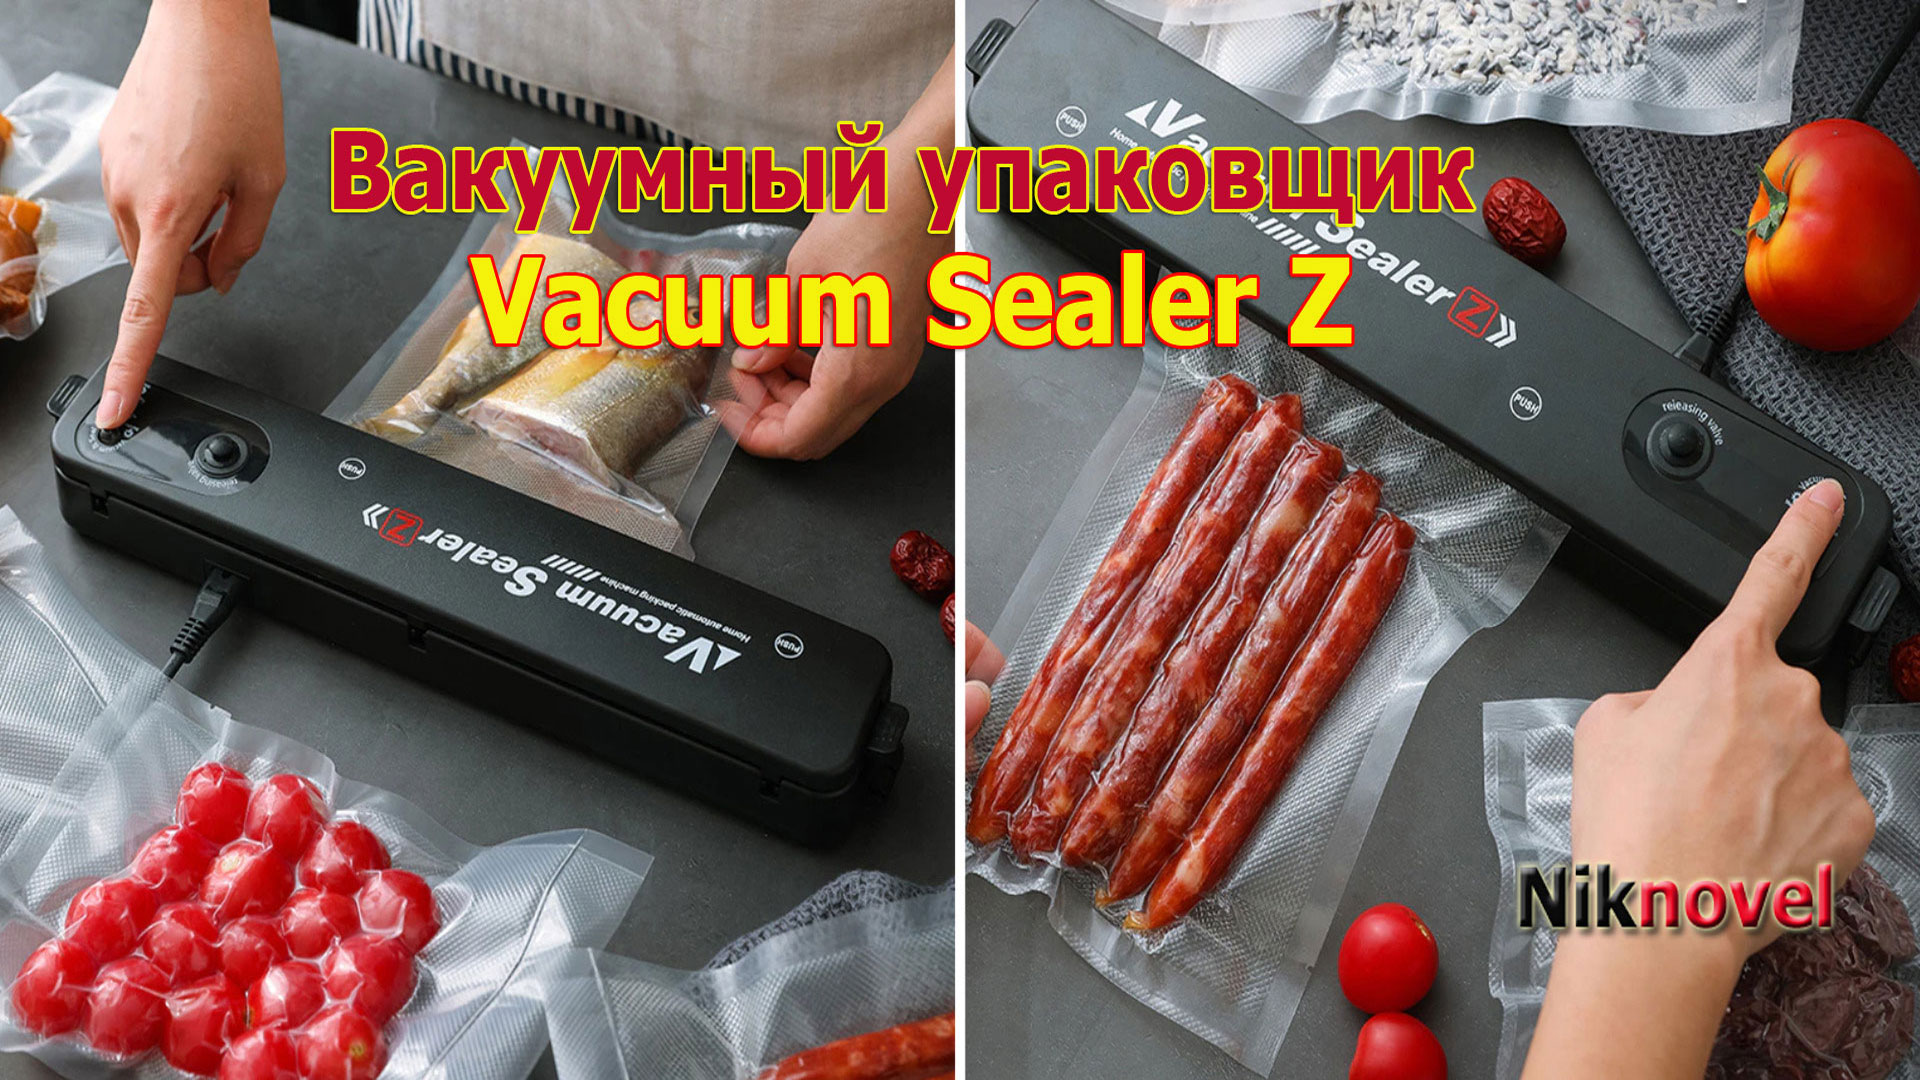 Вакуумный упаковщик Vacuum Sealer Z с АлиЭкспресс. Обзор.